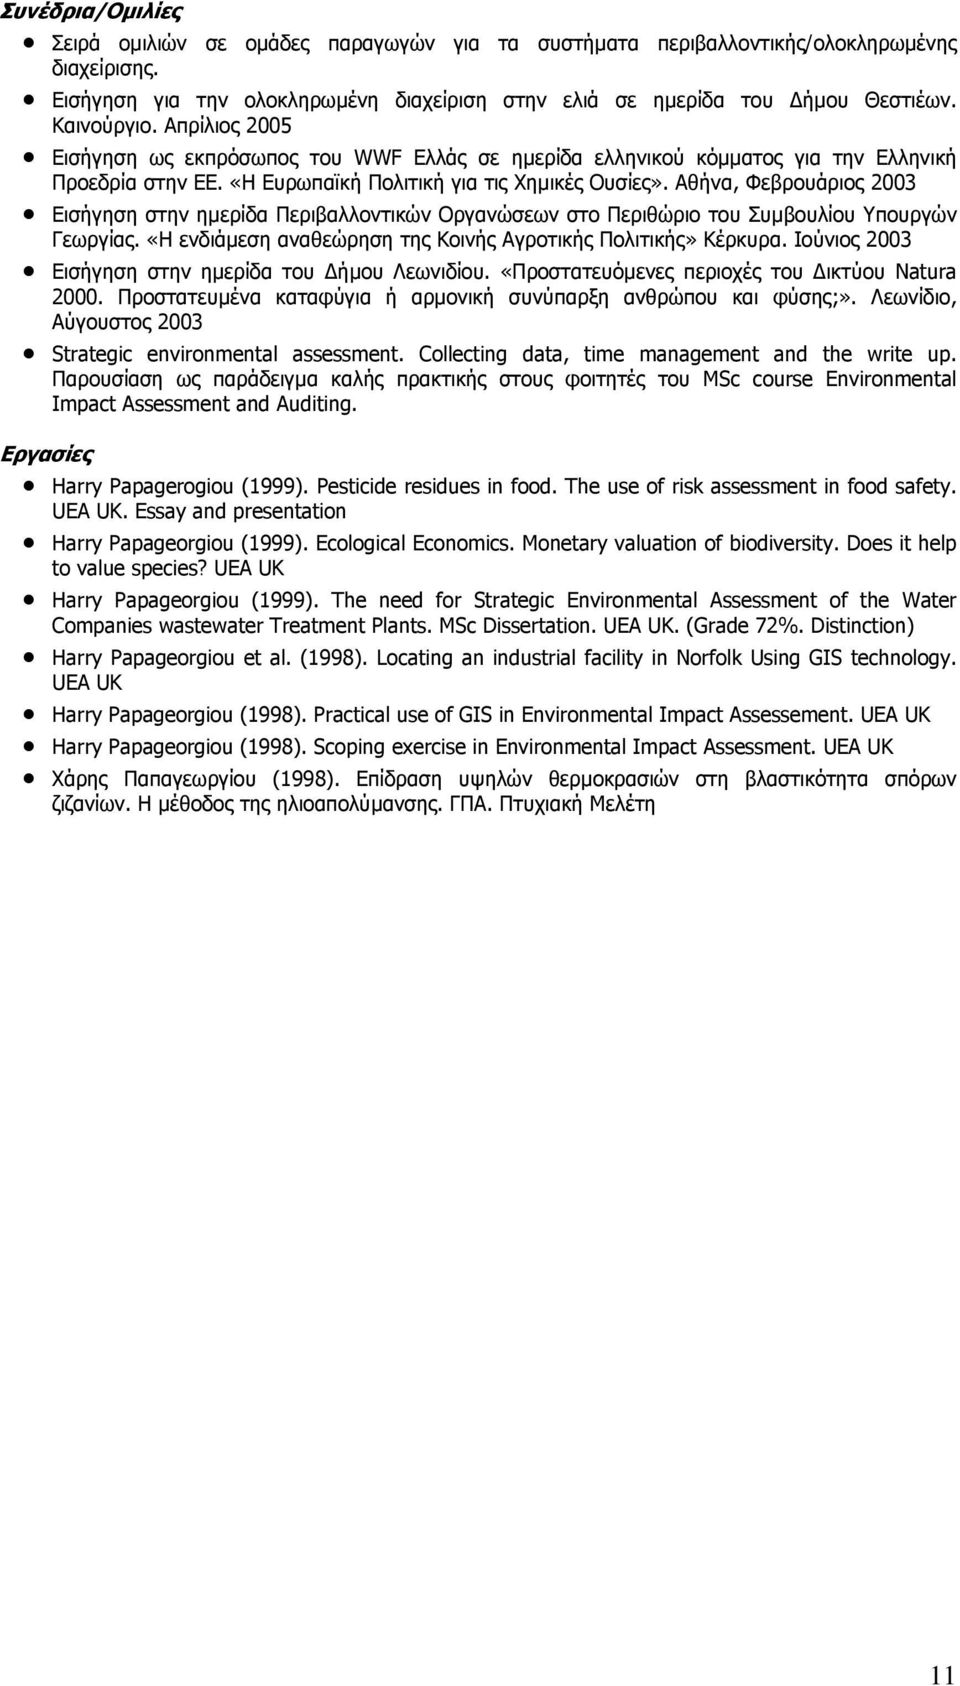 Αθήνα, Φεβρουάριος 2003 Εισήγηση στην ηµερίδα Περιβαλλοντικών Οργανώσεων στο Περιθώριο του Συµβουλίου Υπουργών Γεωργίας. «Η ενδιάµεση αναθεώρηση της Κοινής Αγροτικής Πολιτικής» Κέρκυρα.